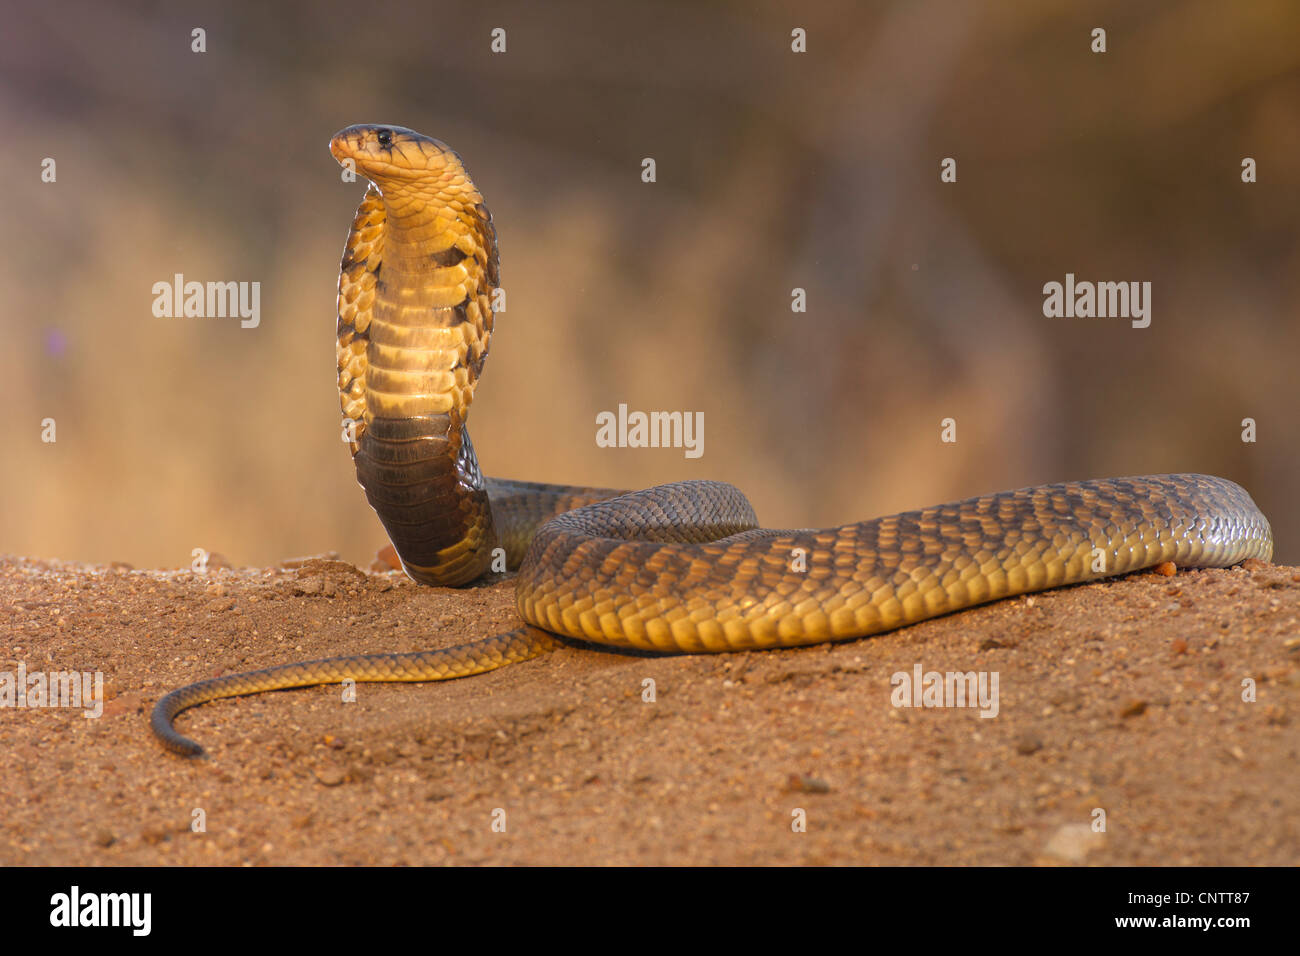 Snouted cobra (Naja annulifera) serpiente, encapuchado en postura defensiva en Sudáfrica Foto de stock